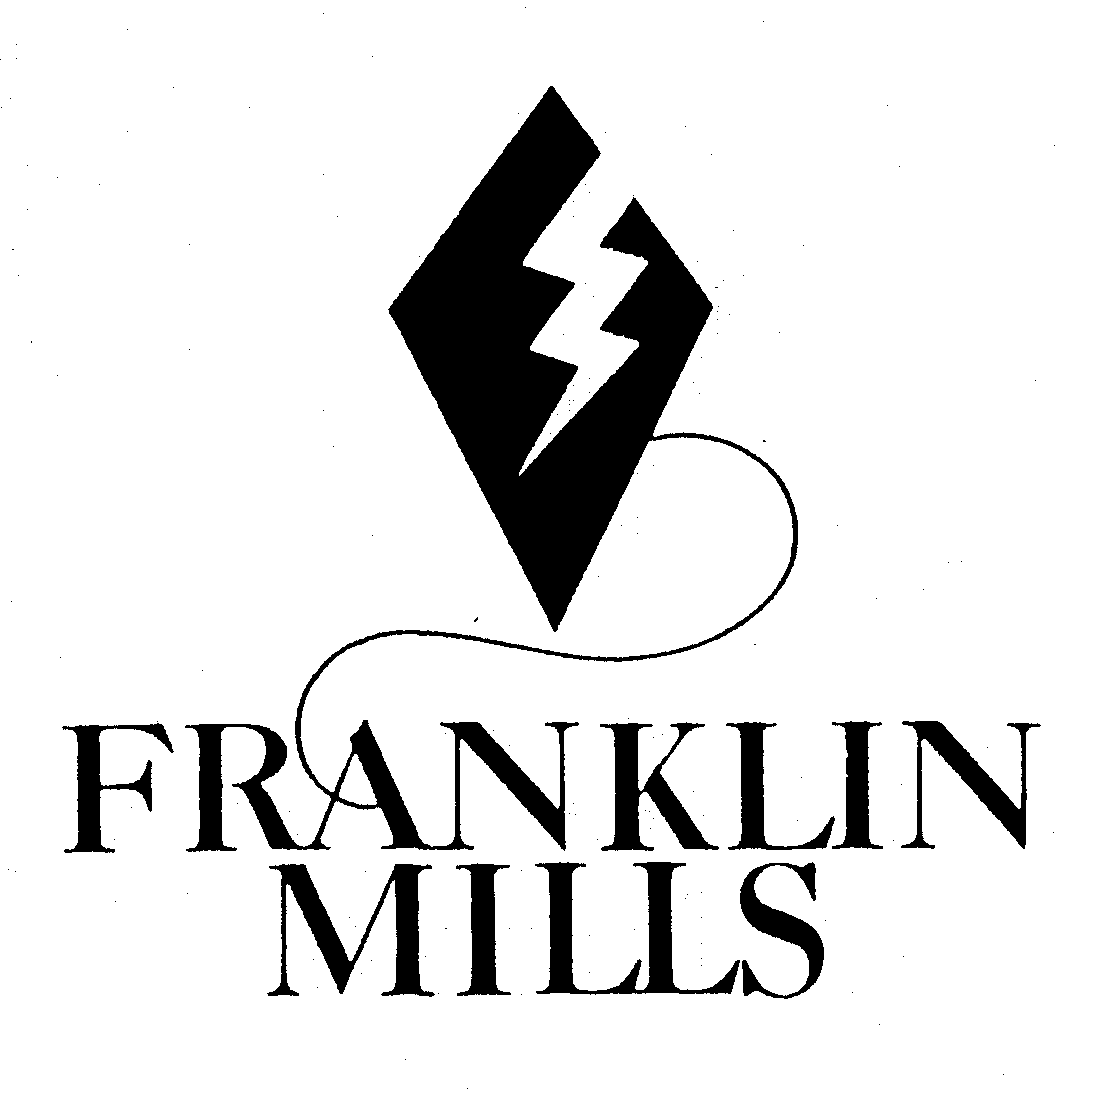  FRANKLIN MILLS